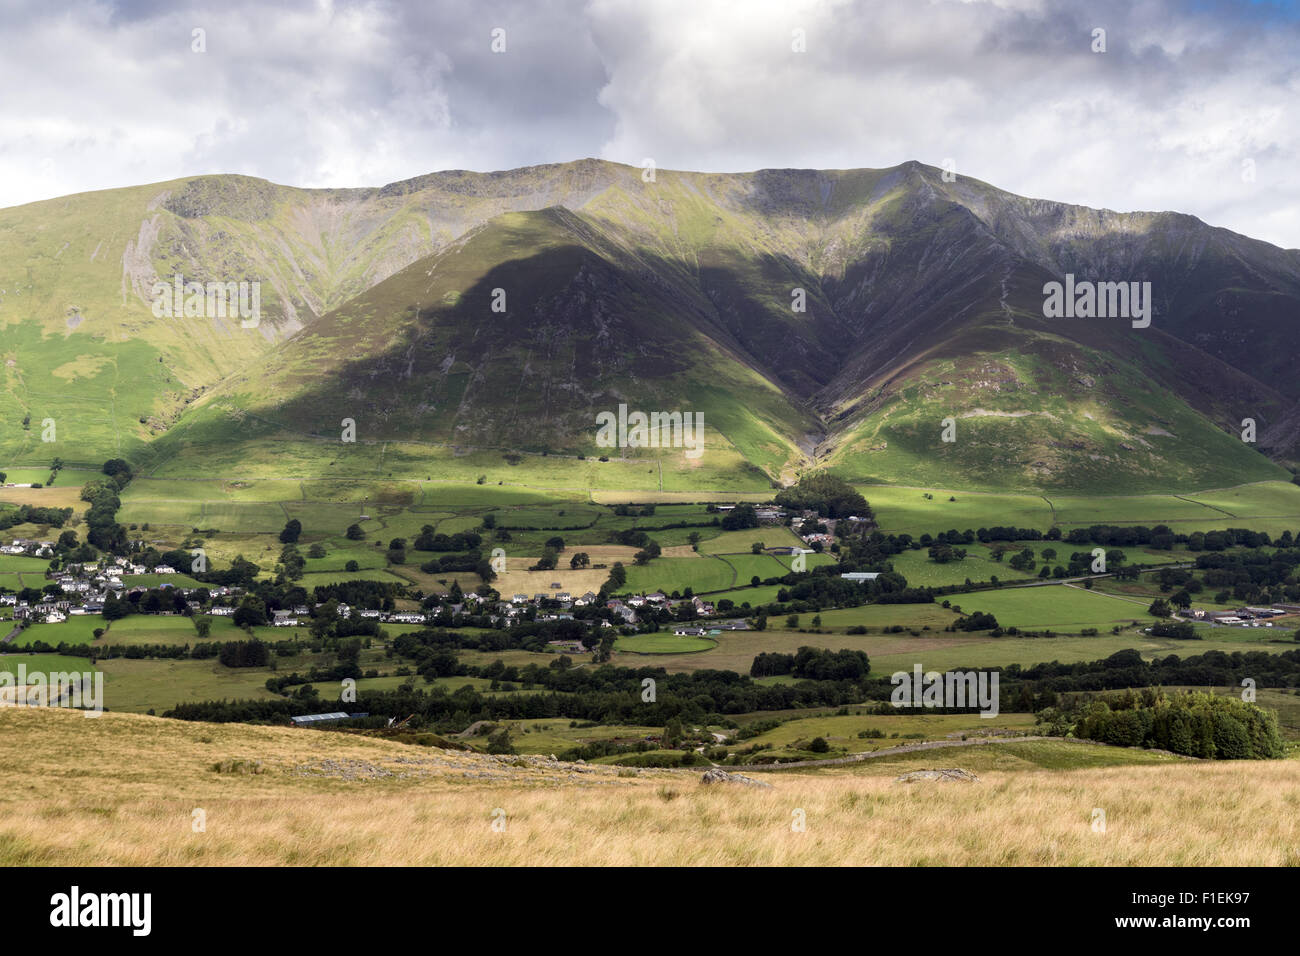 Blencathra or Saddleback, in the Lake District Stock Photo